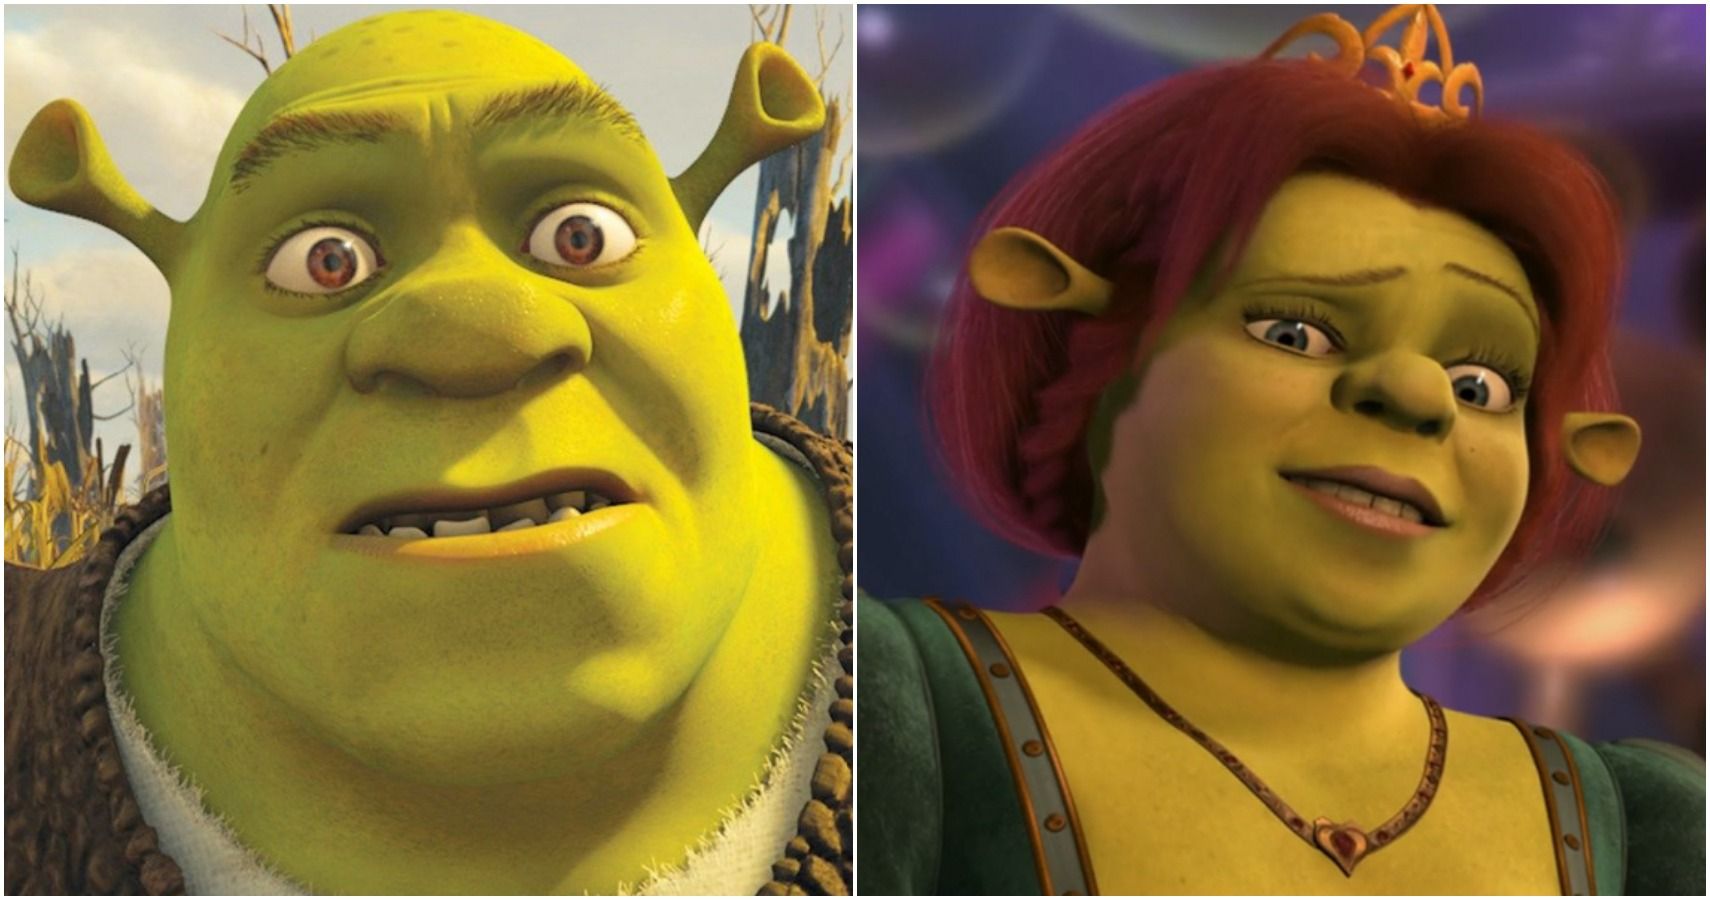 D&D Moral Alignments Of Shrek Characters